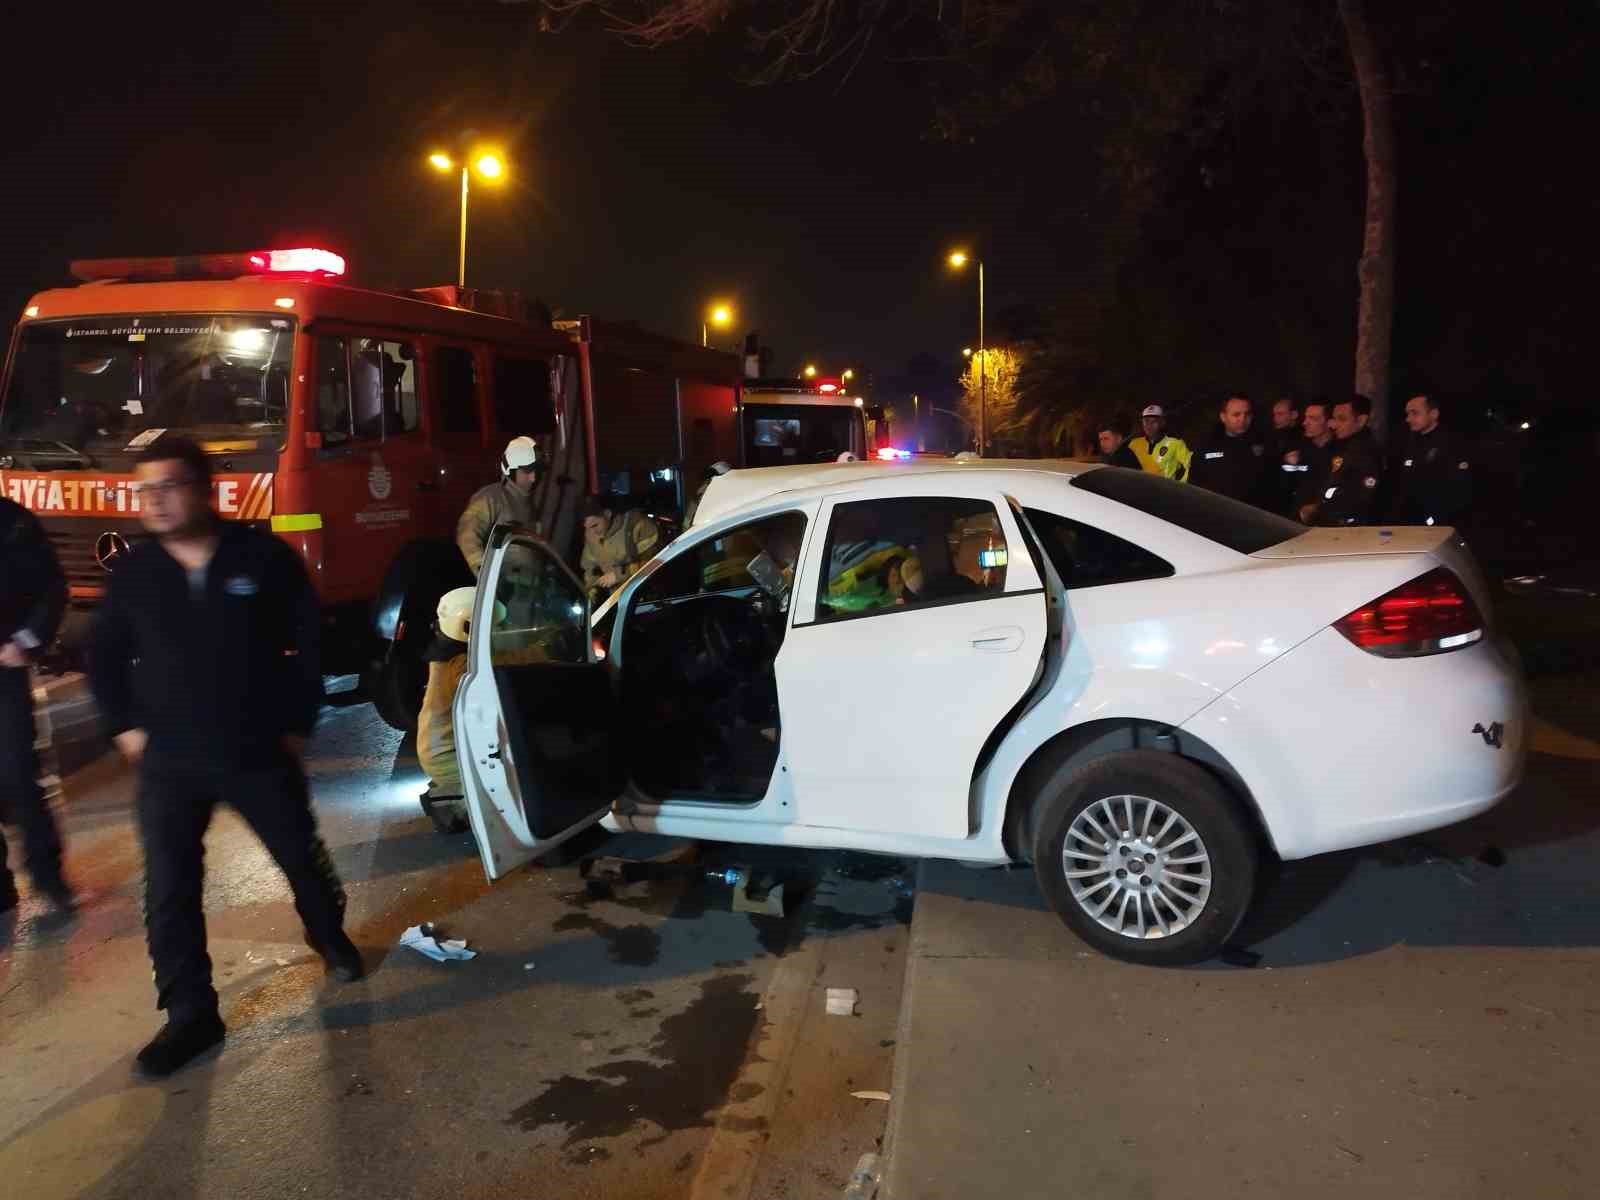 Kadıköy’de kontrolden çıkan otomobil direğe çarptı: 3 yaralı
